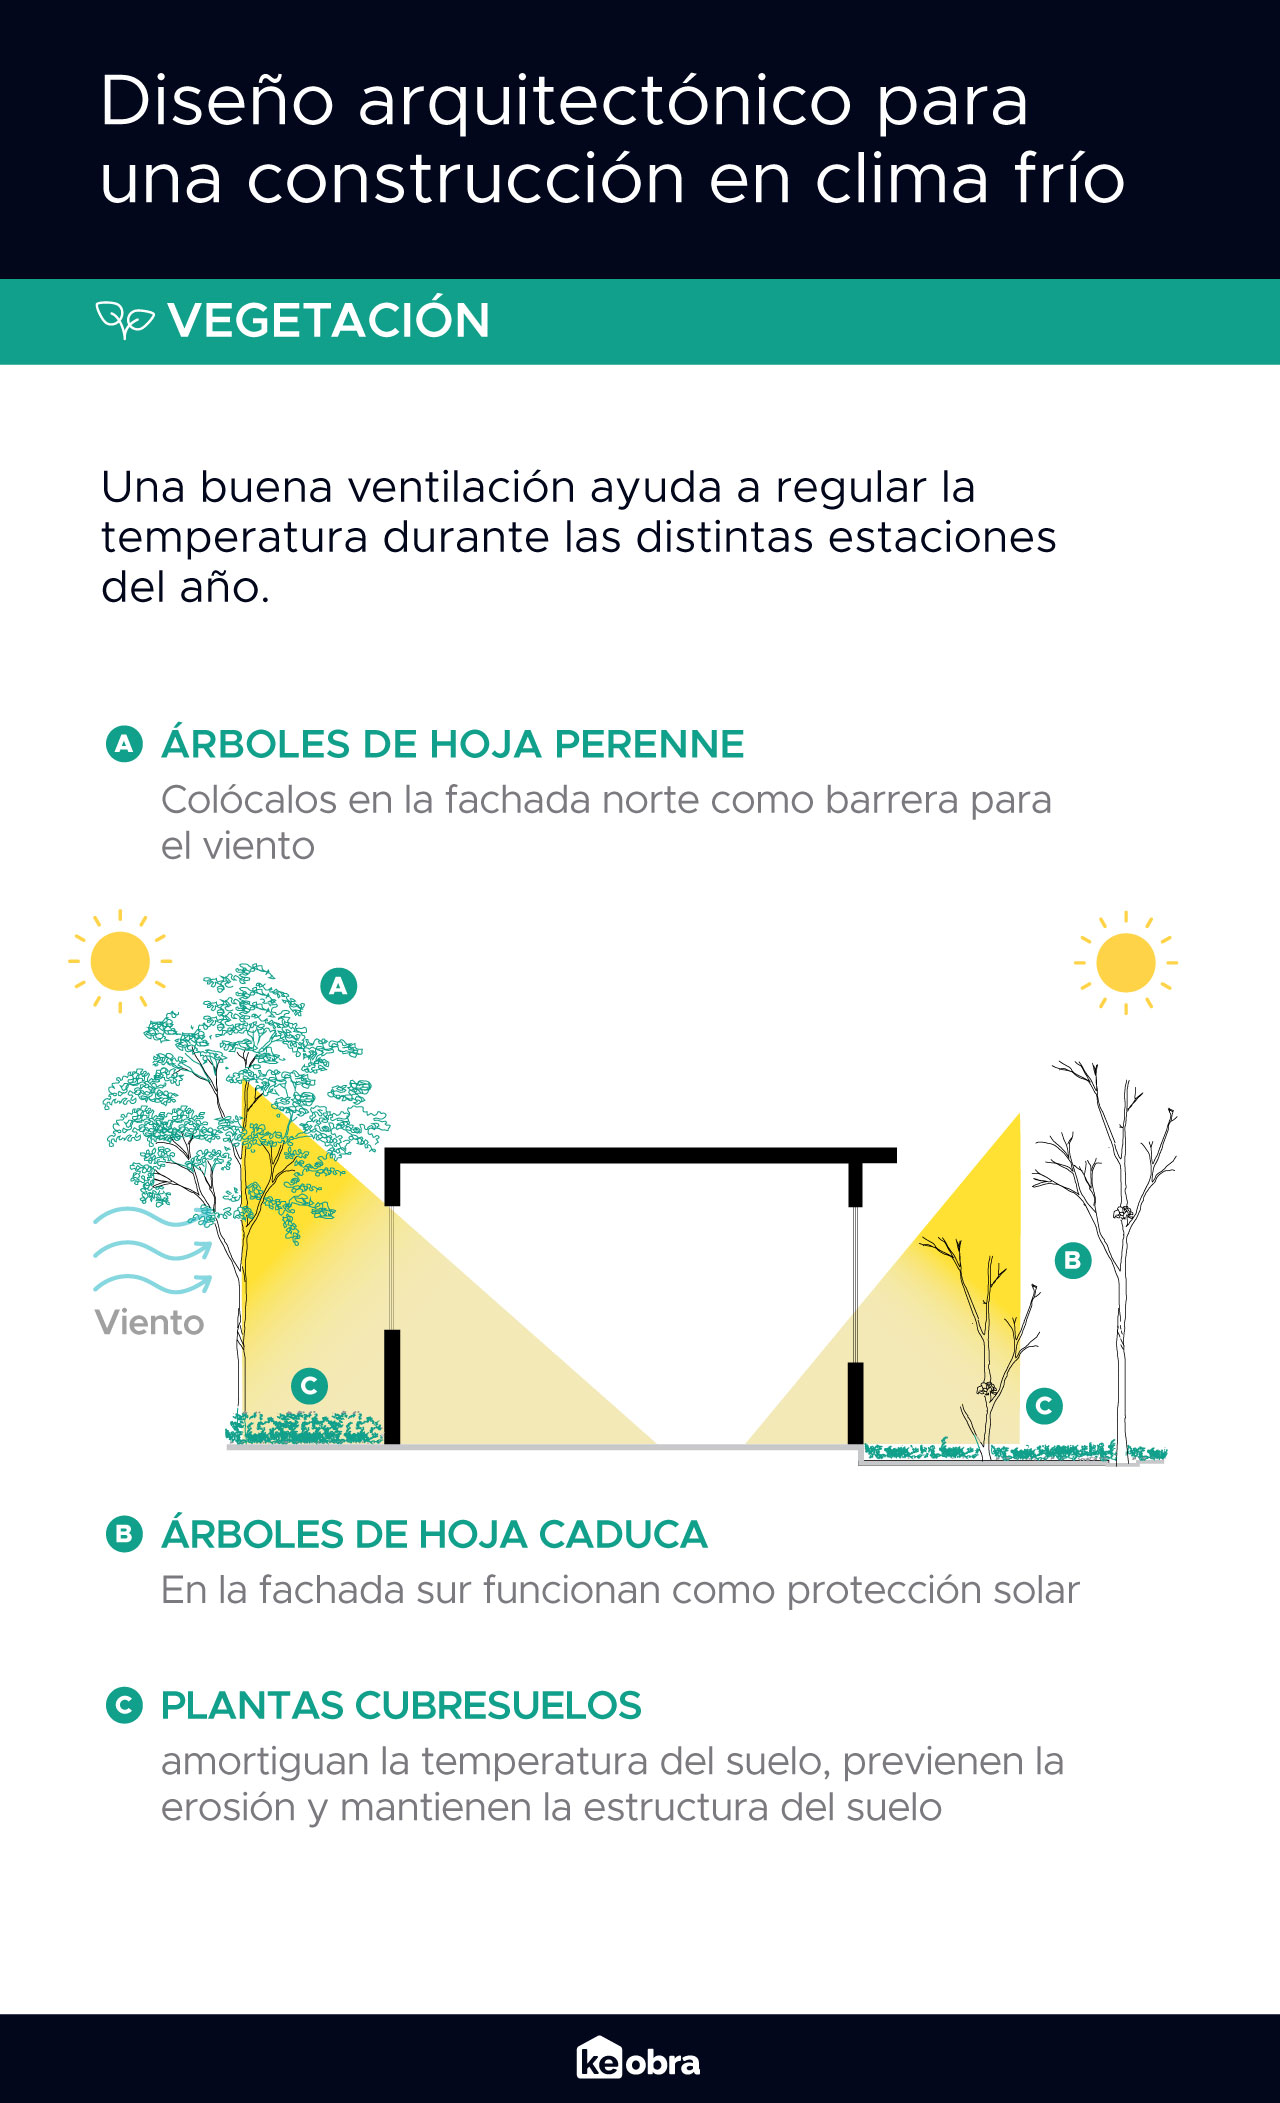 Recomendaciones de diseño arquitectónico para viviendas en clima frio, coloca árboles y vegetación en lugares estratégicos para favorecer la luz y el calor solar al interior, así como, controlar las corriente de aire.